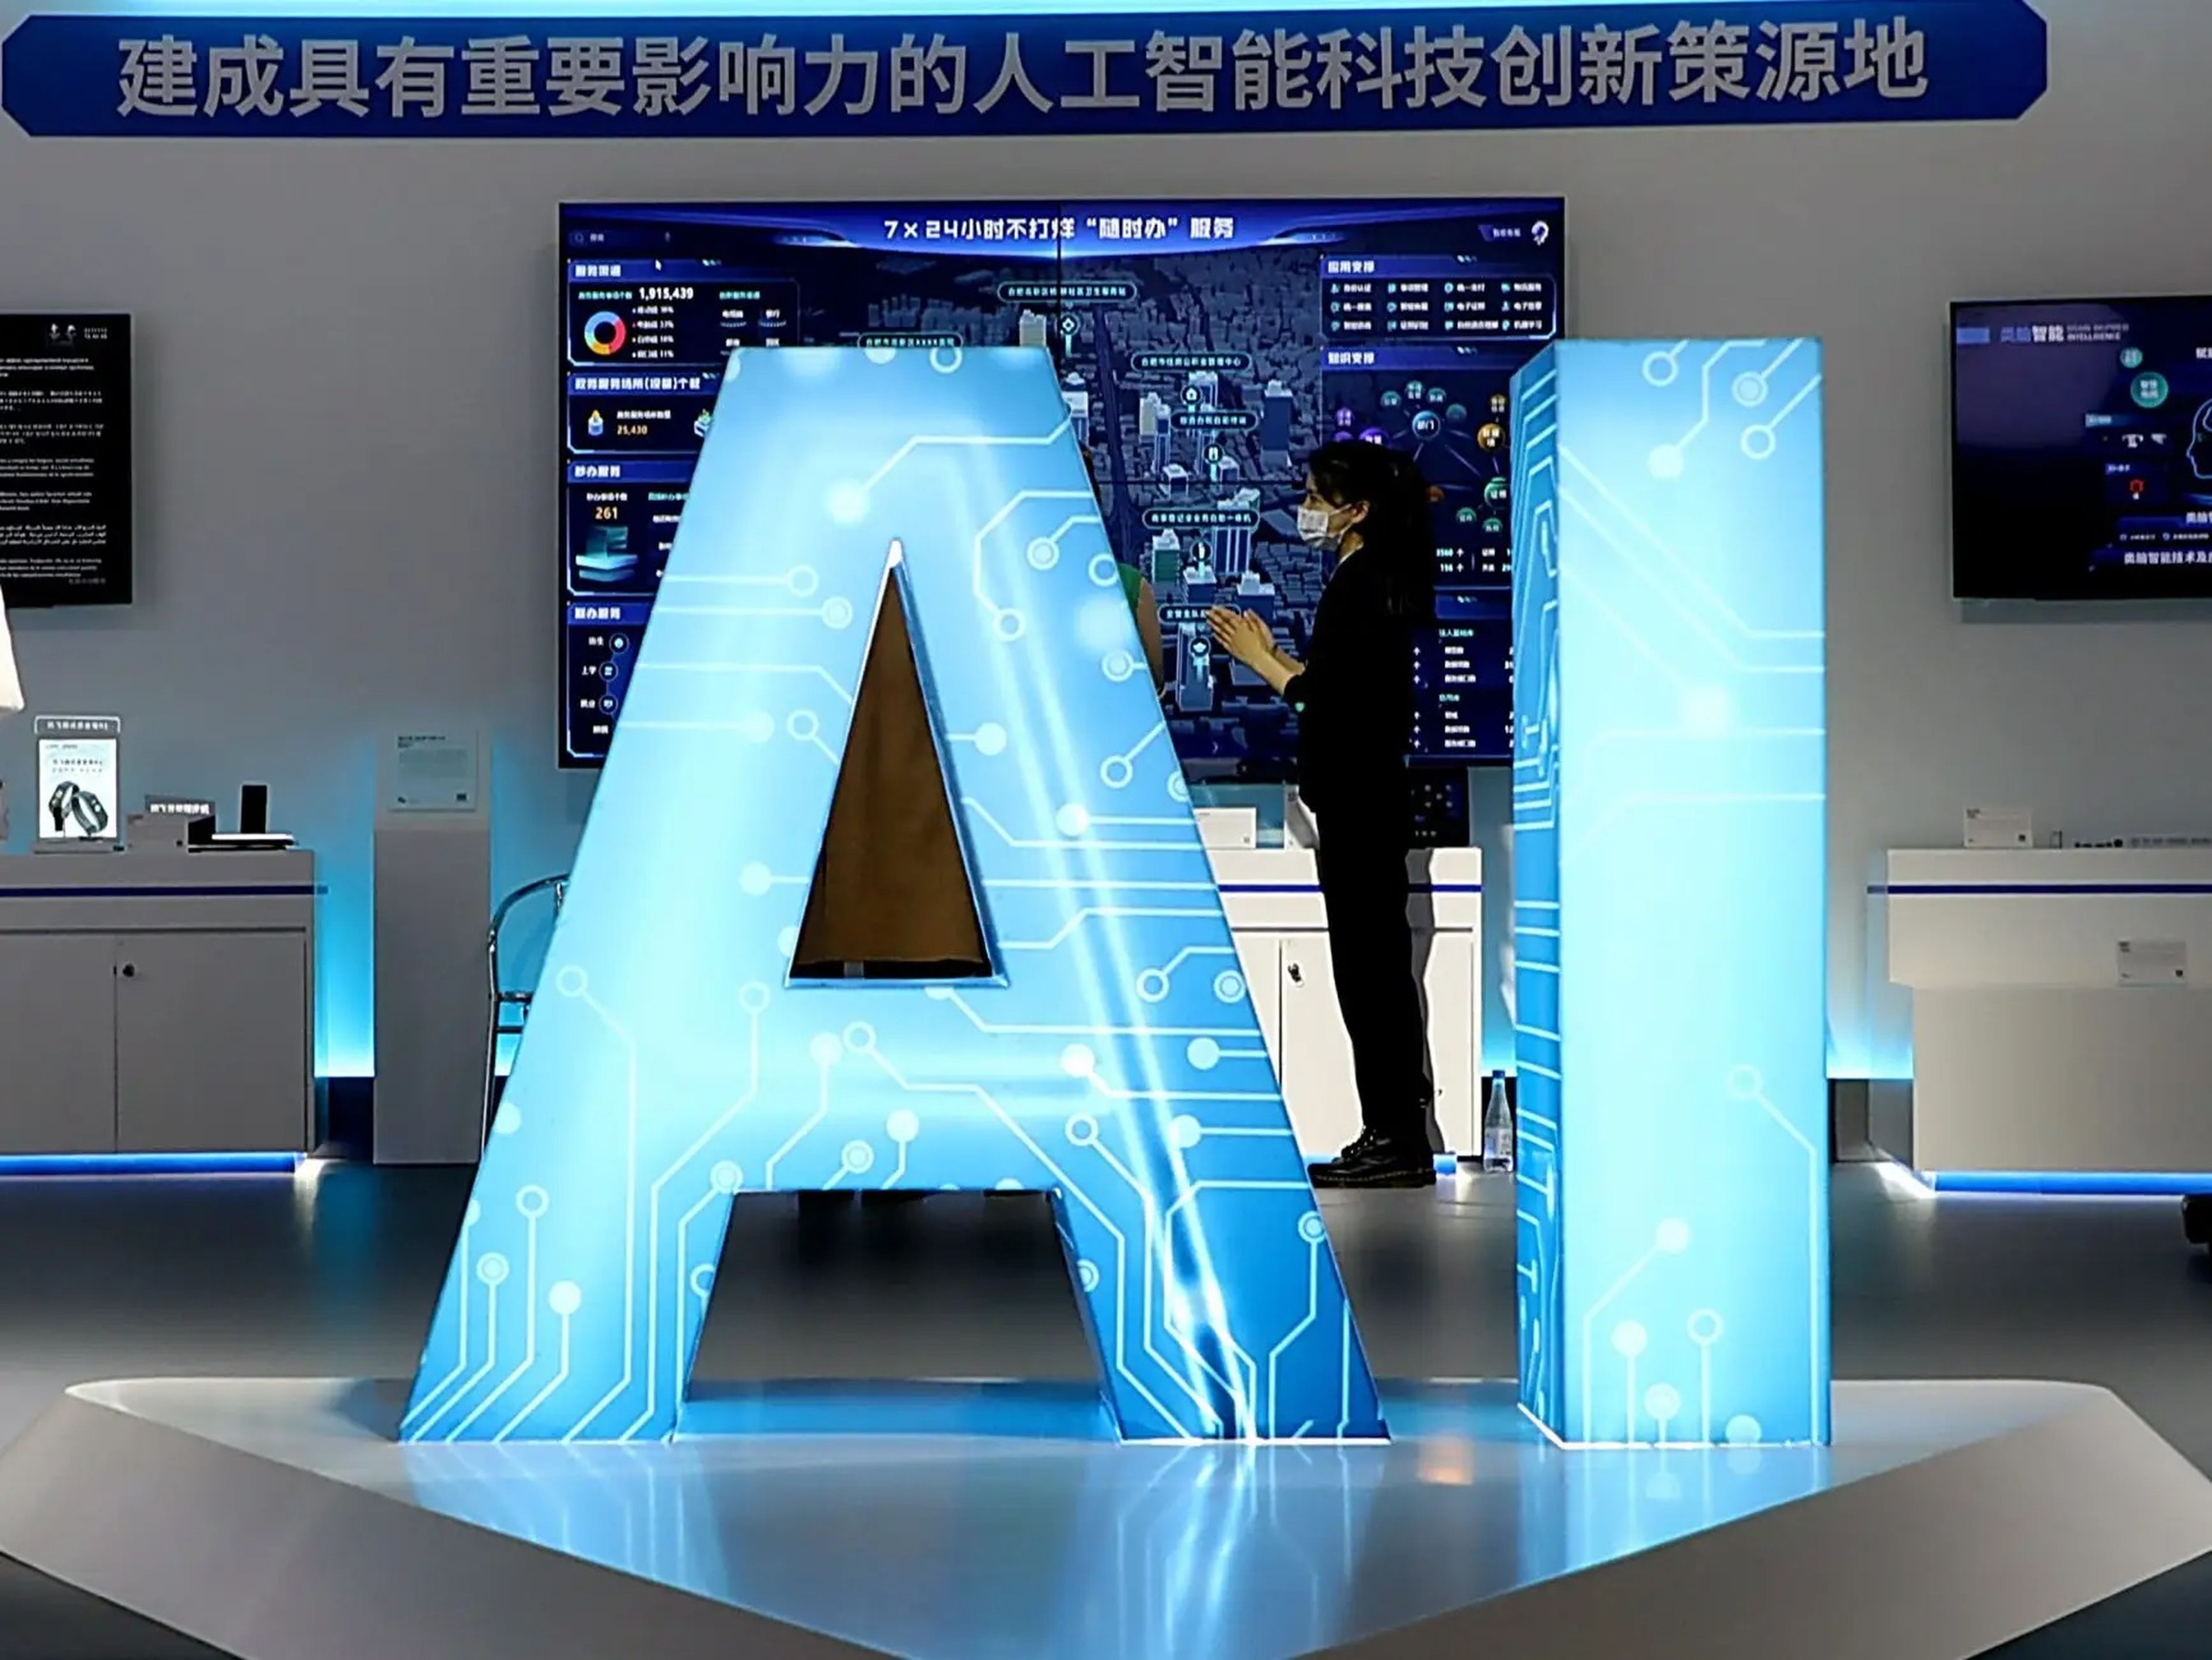 Ciudadanos aprenden sobre las nuevas tecnologías de inteligencia artificial en una exhibición en Hefei, China